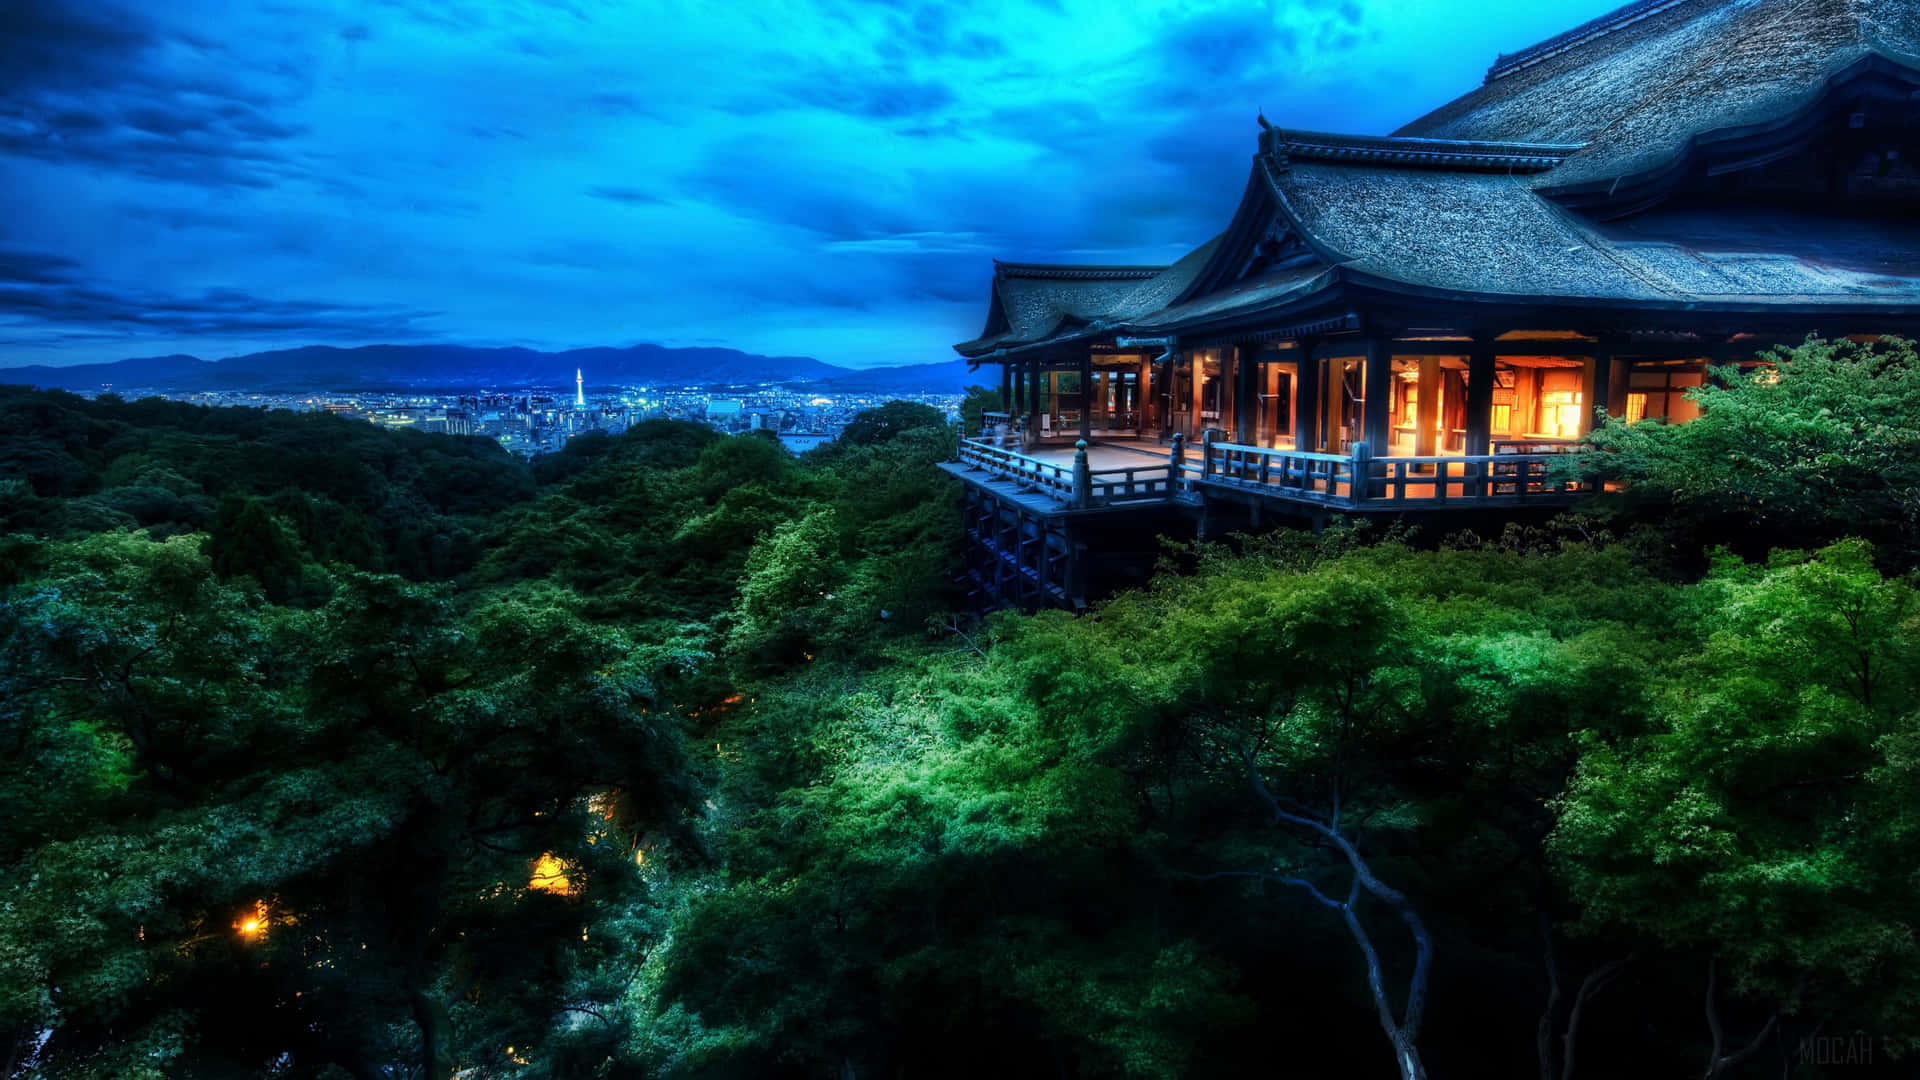 Lamajestuosa Belleza De Un Templo Japonés Al Amanecer.